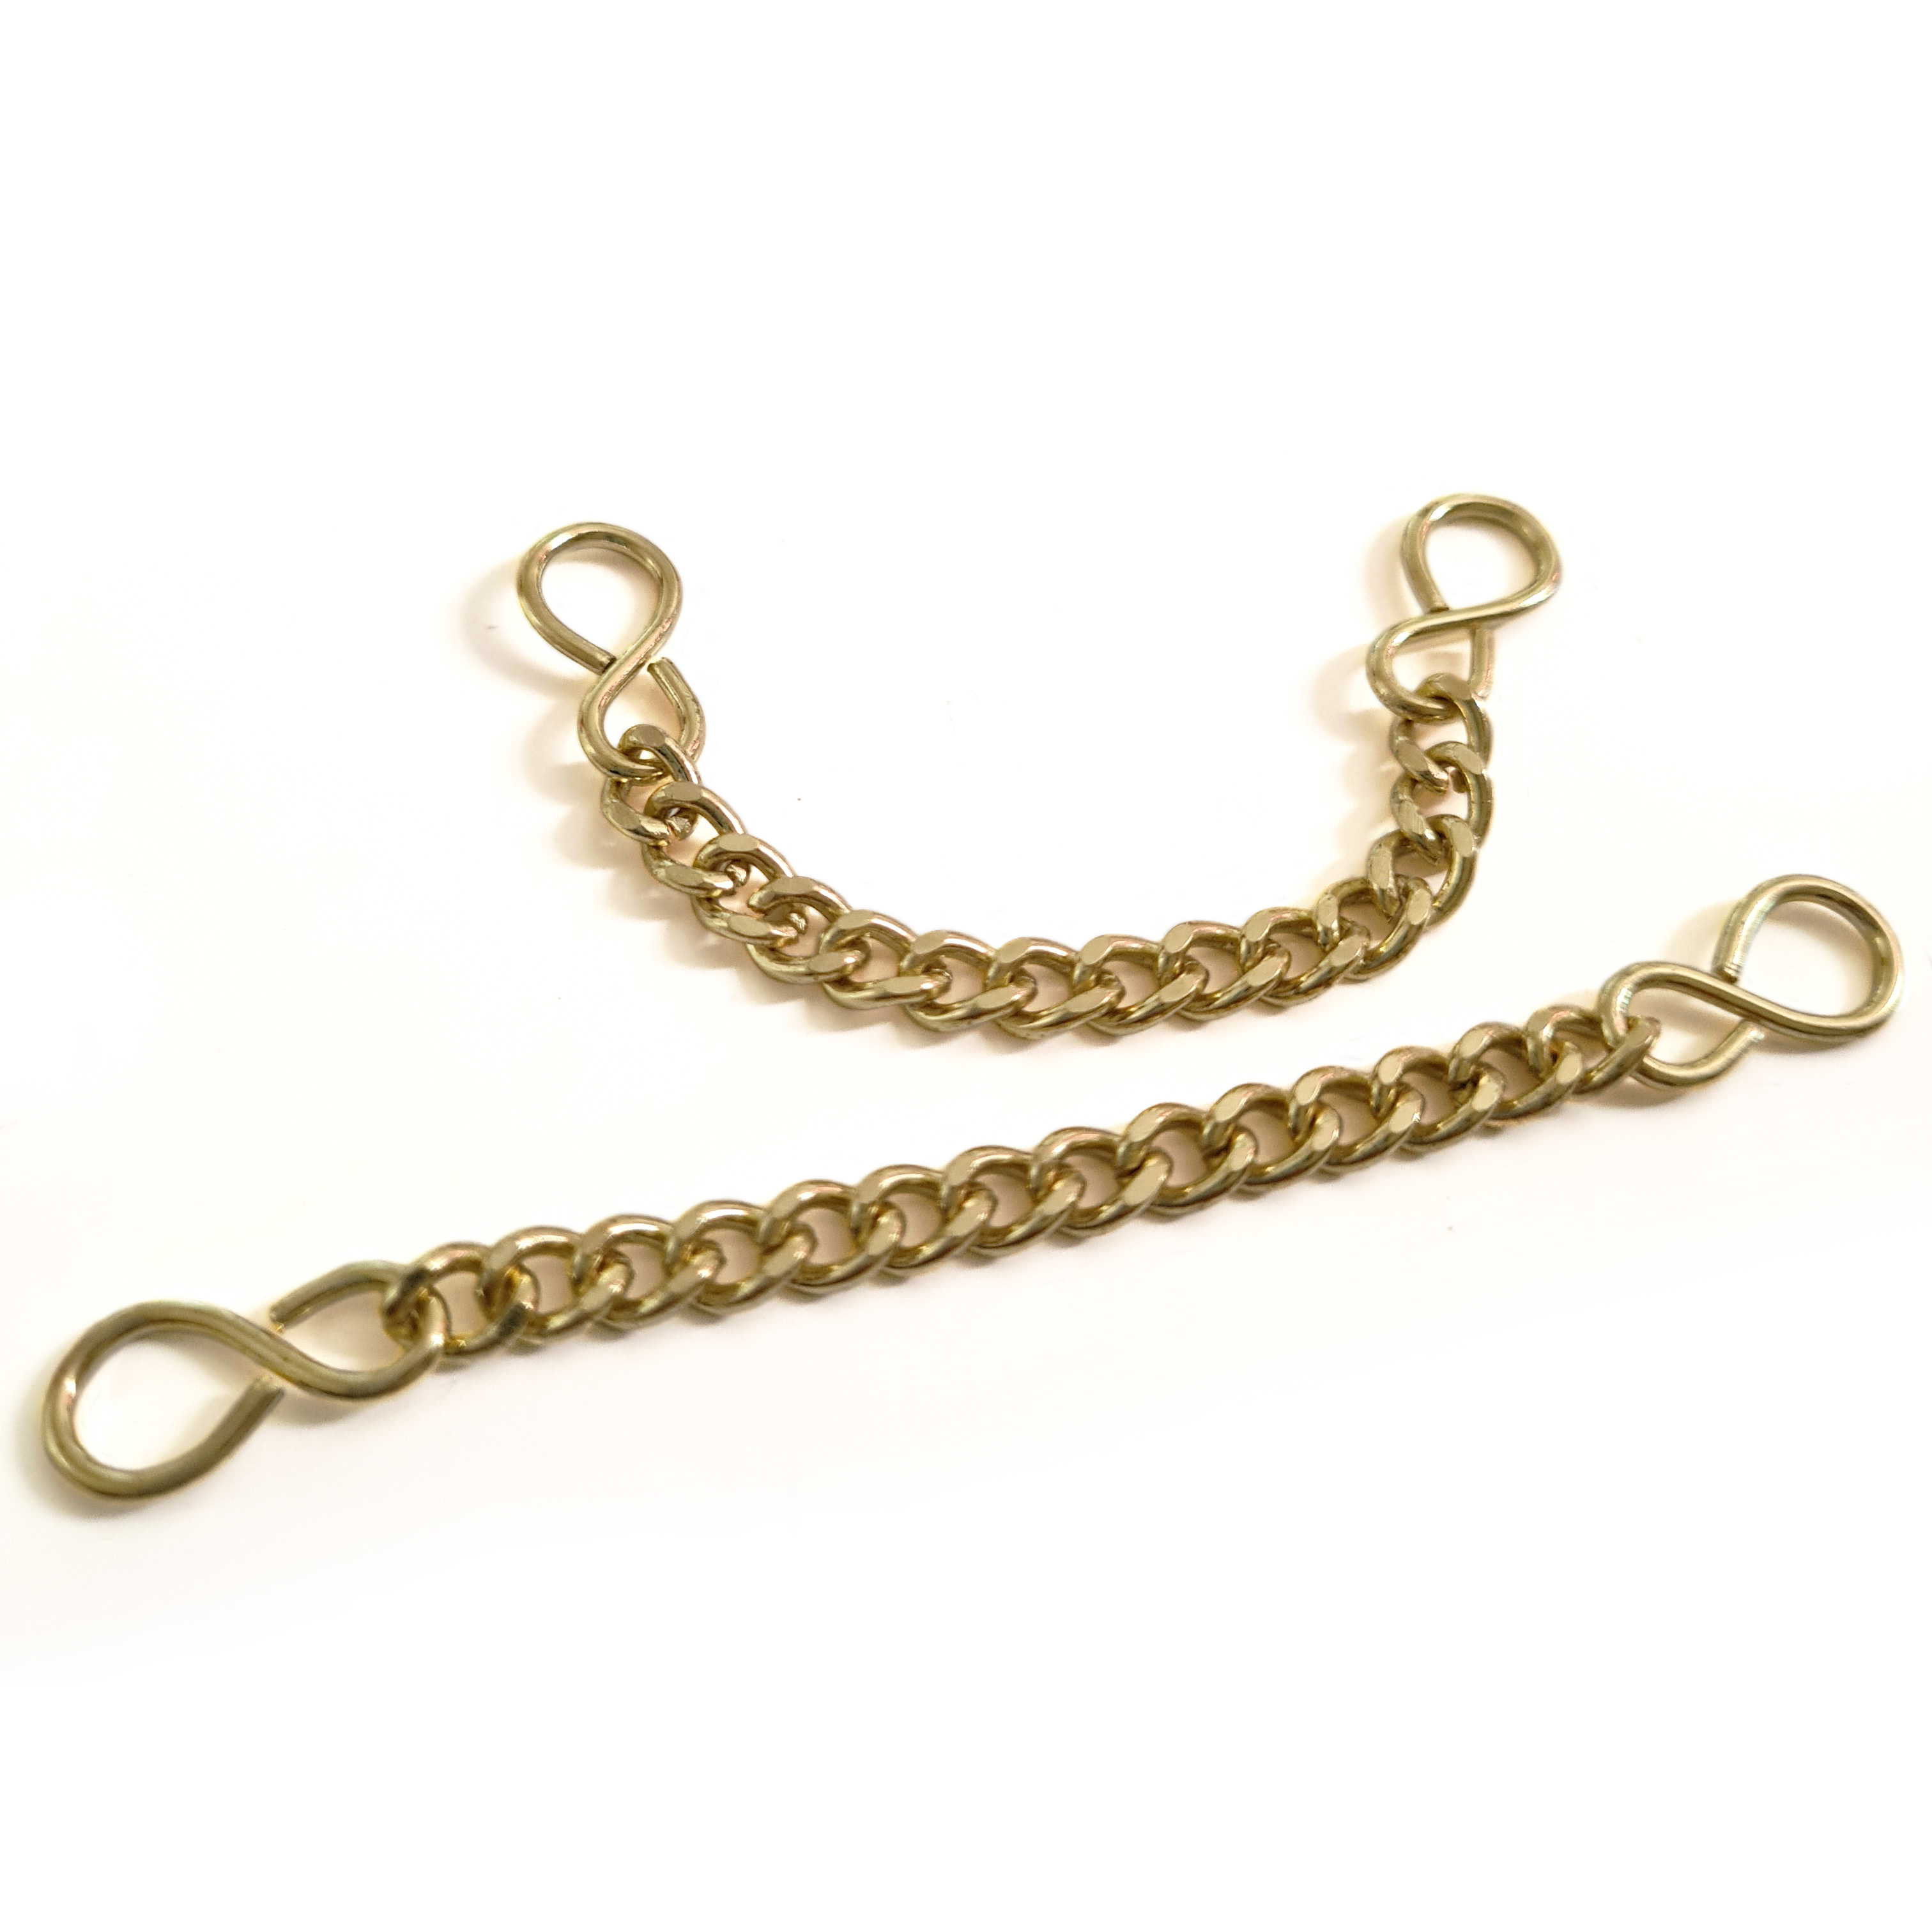 Metal S-Hook Neck Chain